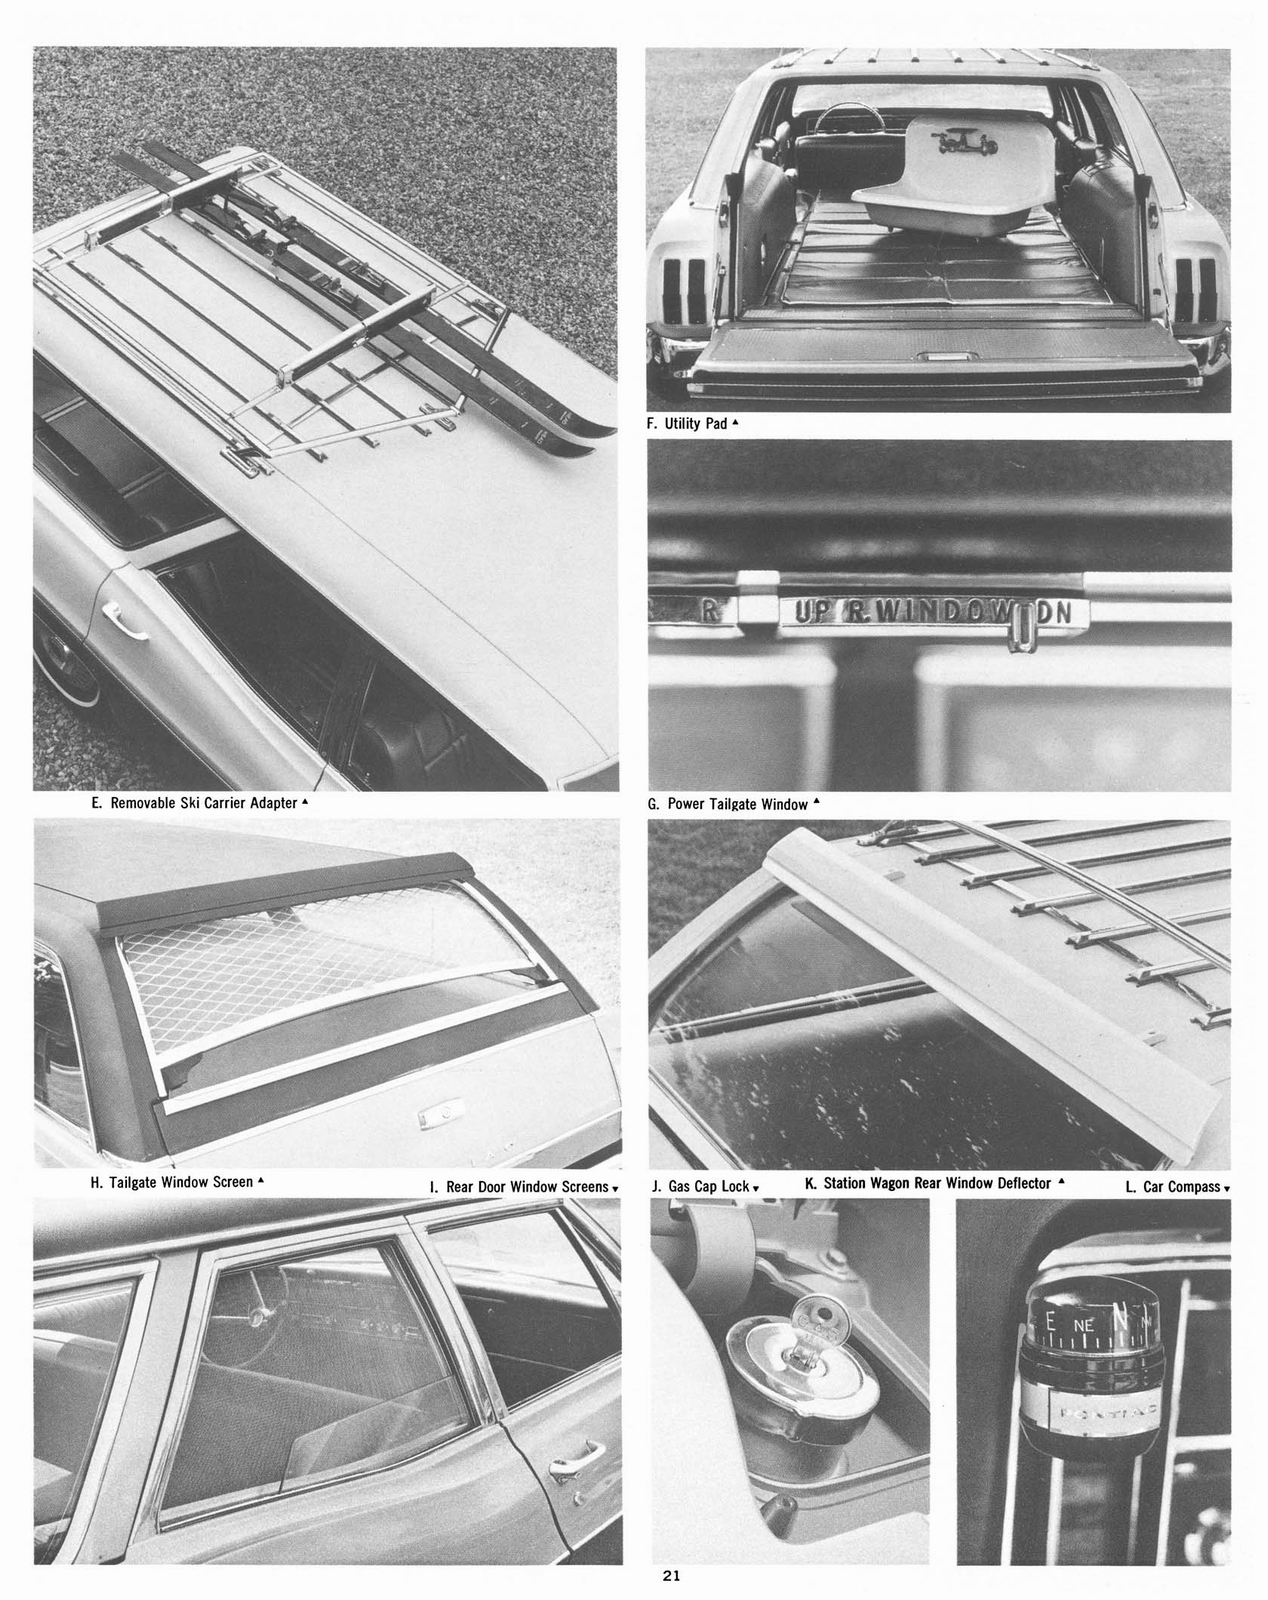 n_1967 Pontiac Accessories-21.jpg